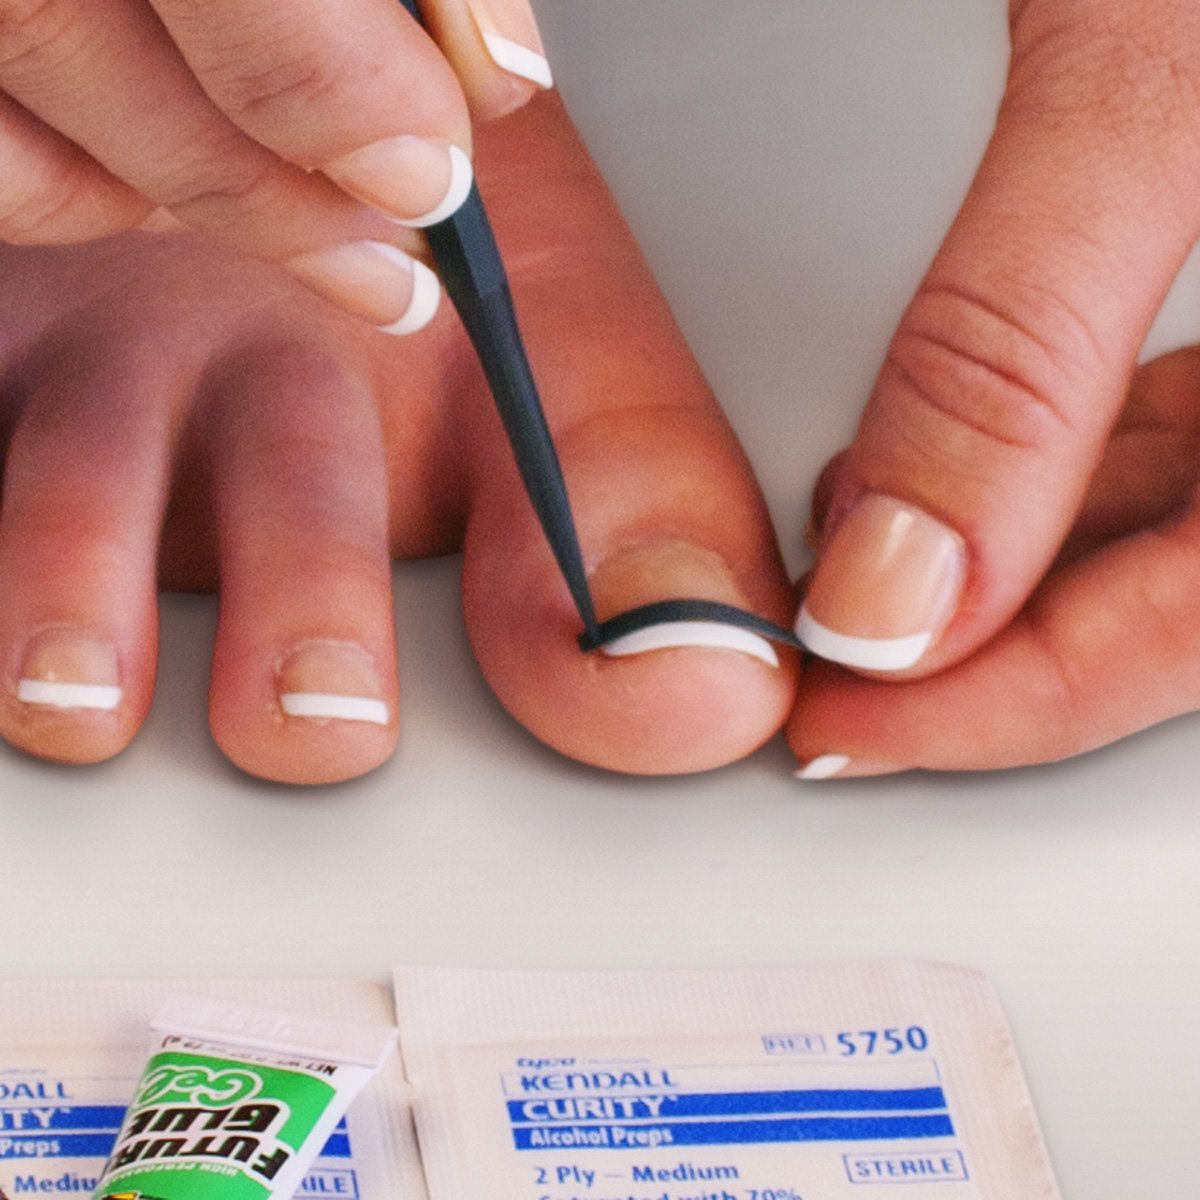 NailEase ingrown nail treatment